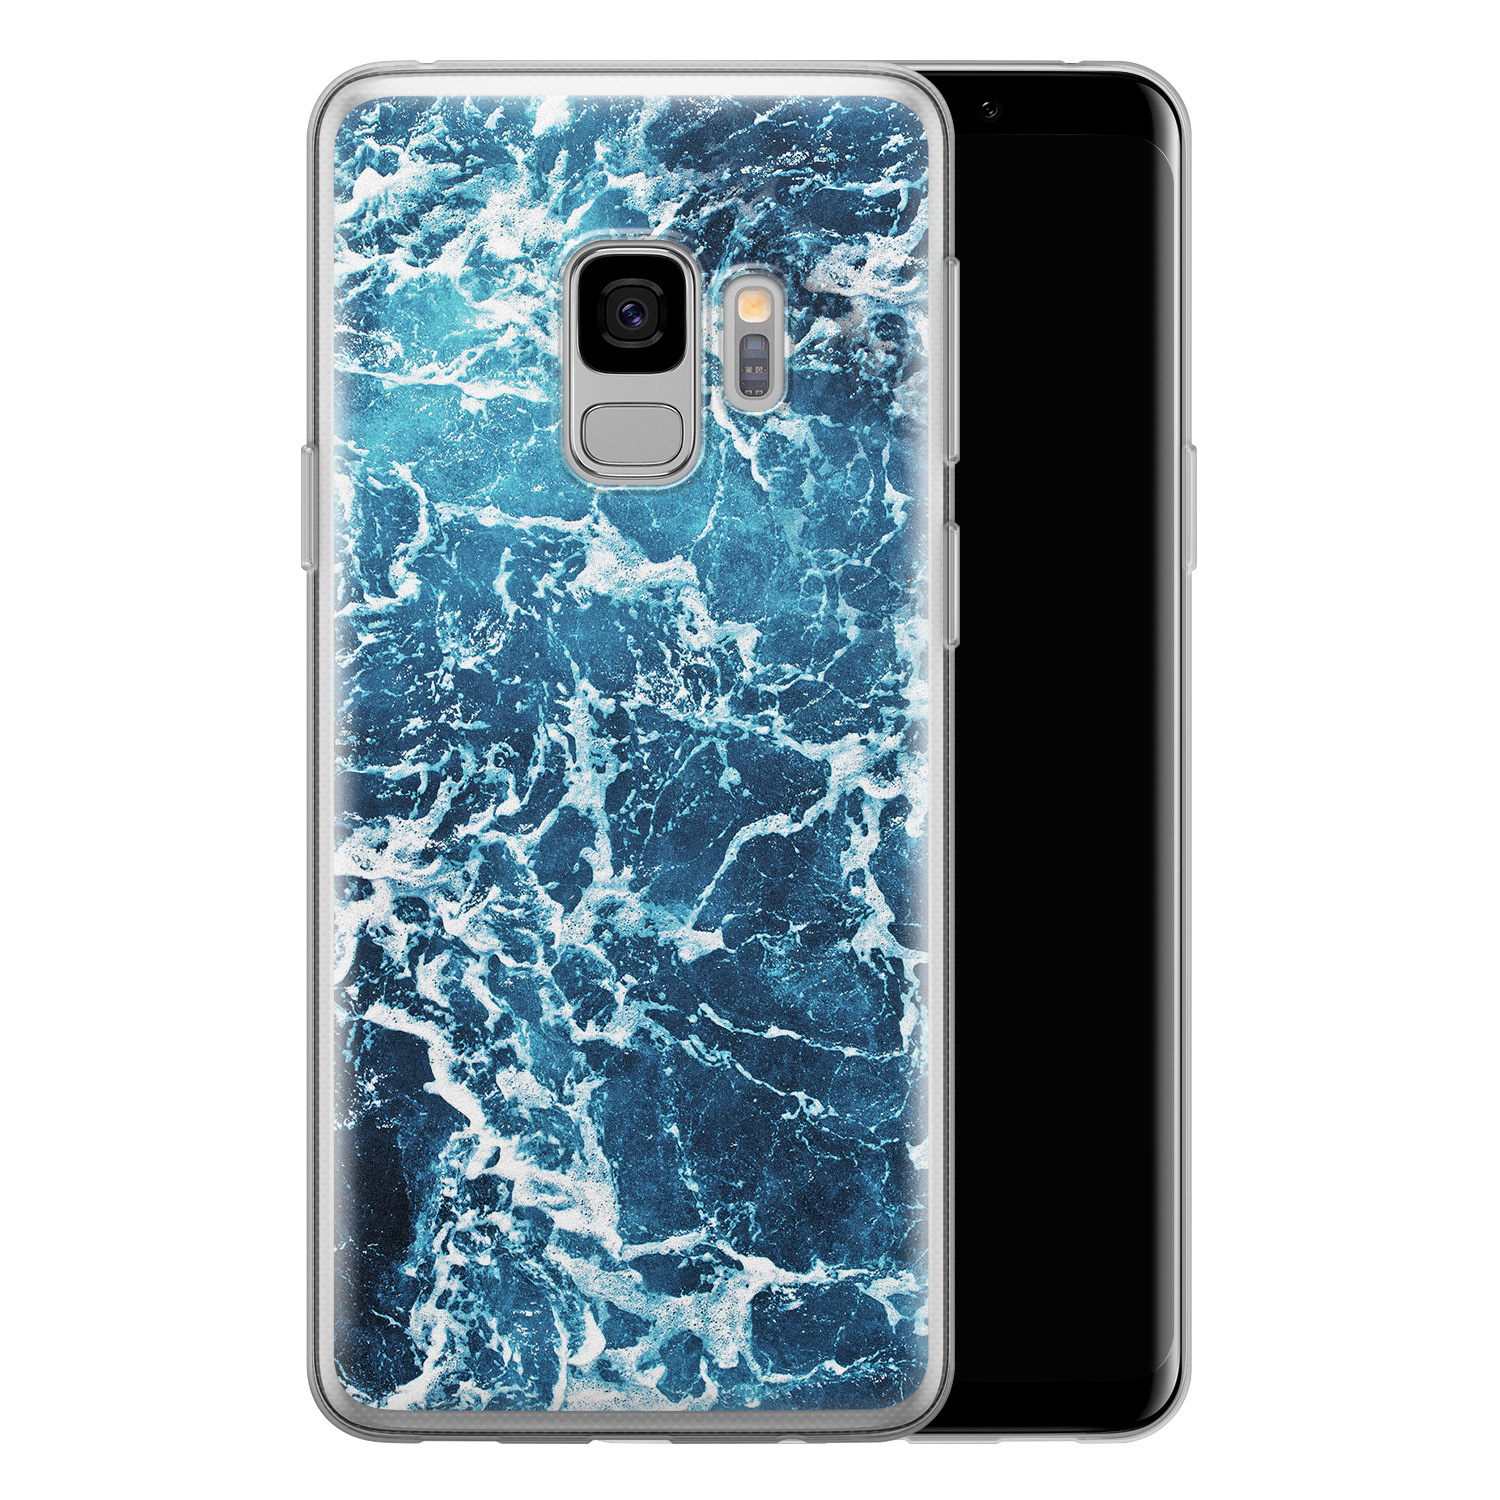 Leuke Telefoonhoesjes Samsung Galaxy S9 siliconen hoesje - Ocean blue